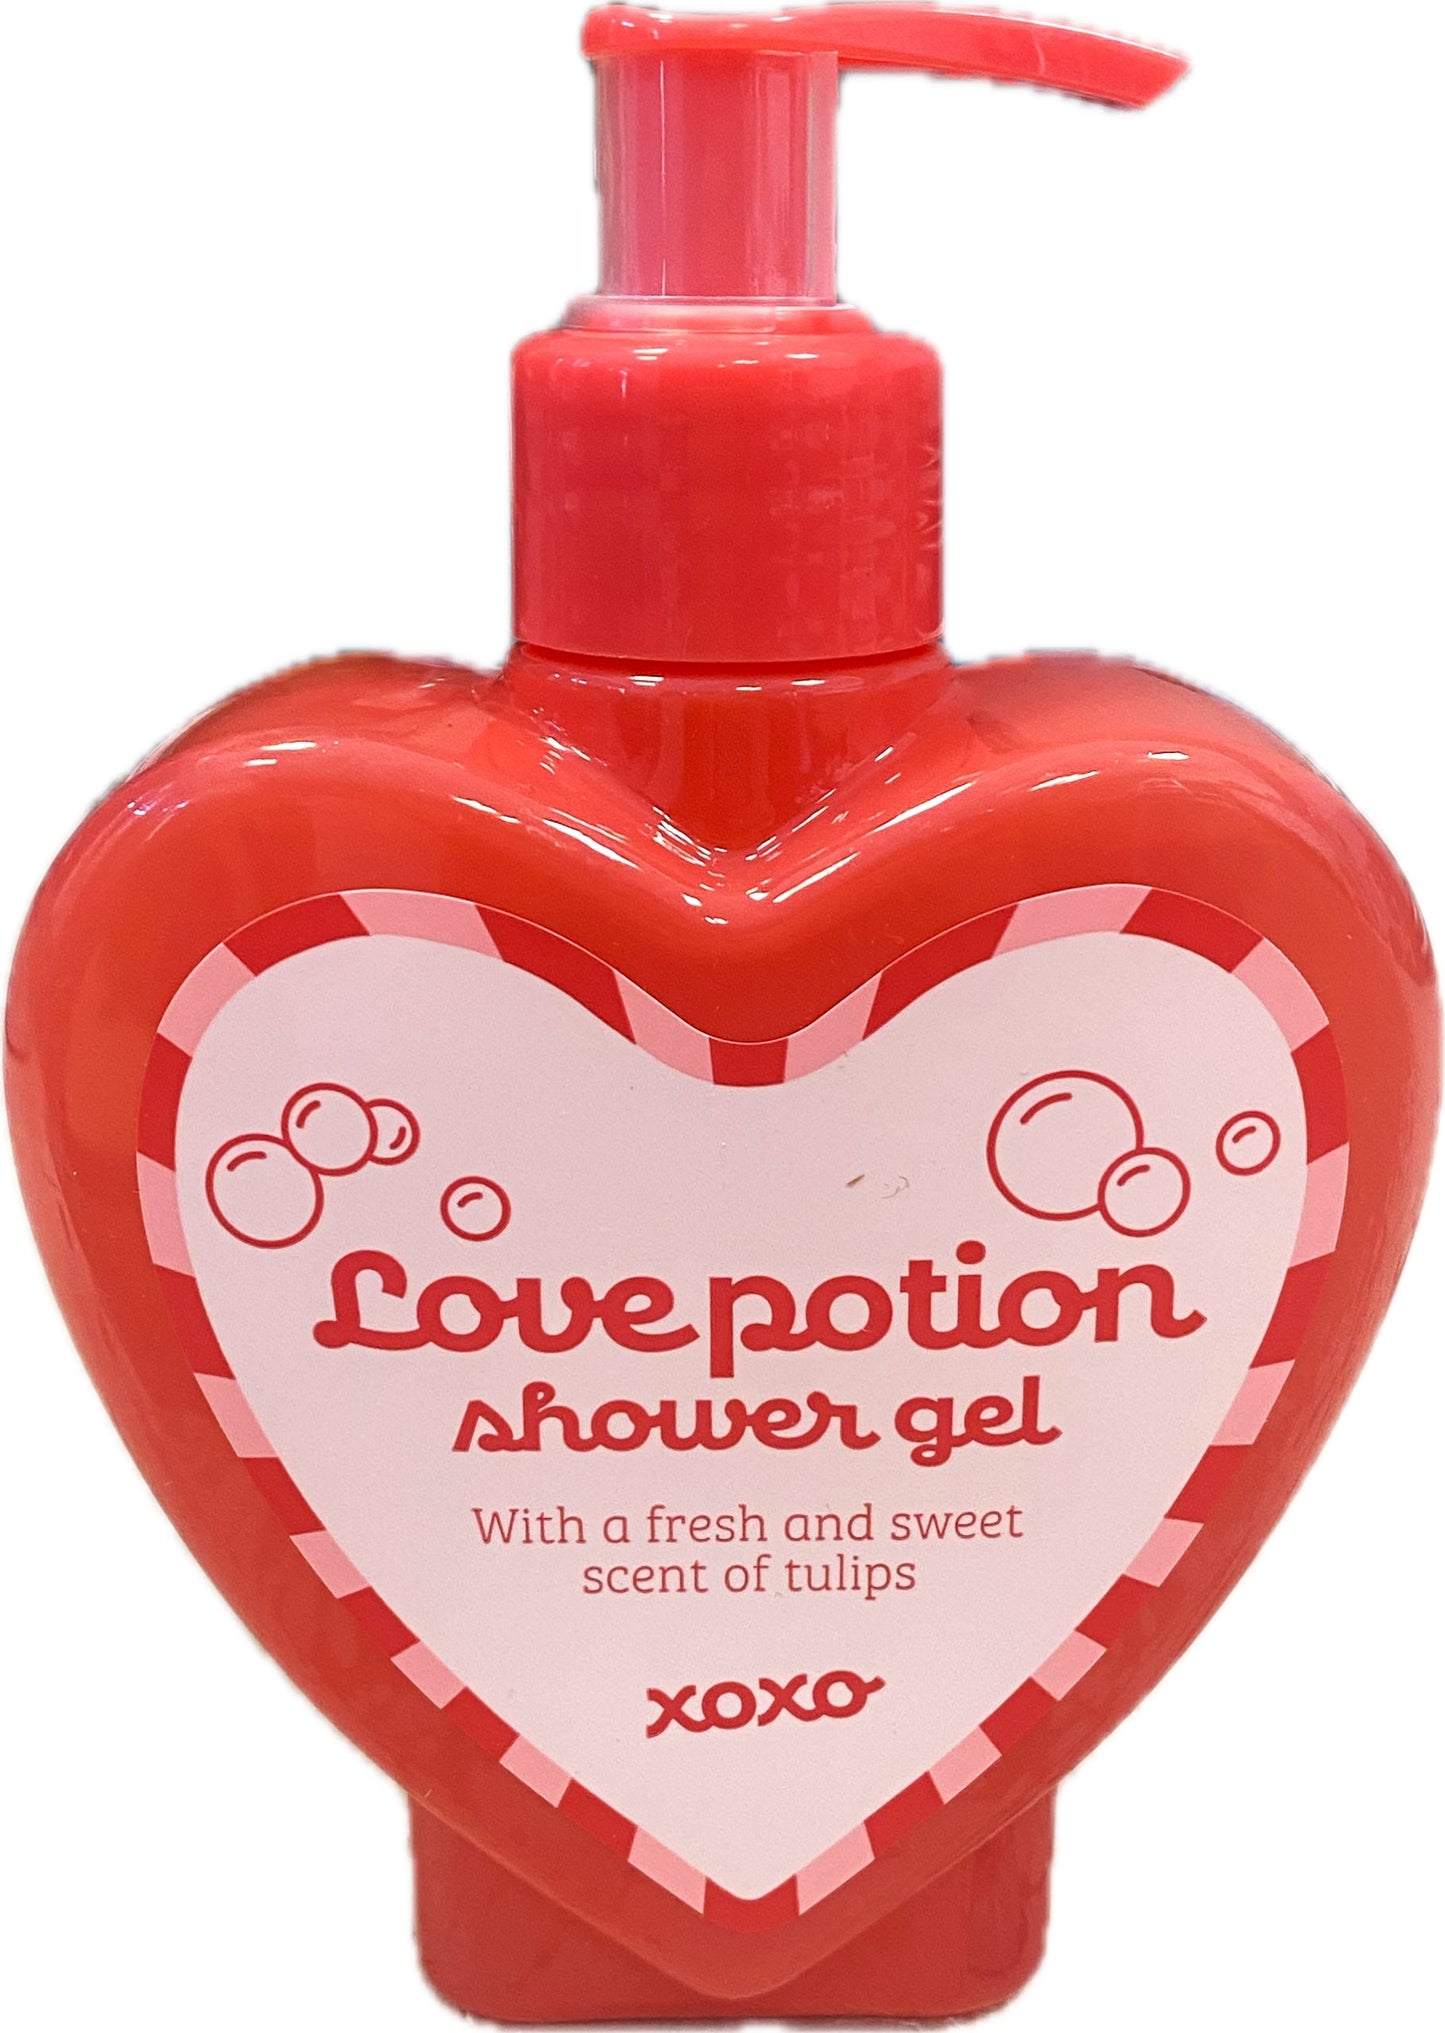 Love Potion Shower Gel - Hartvormige Fles met Tulpgeur - 300ml